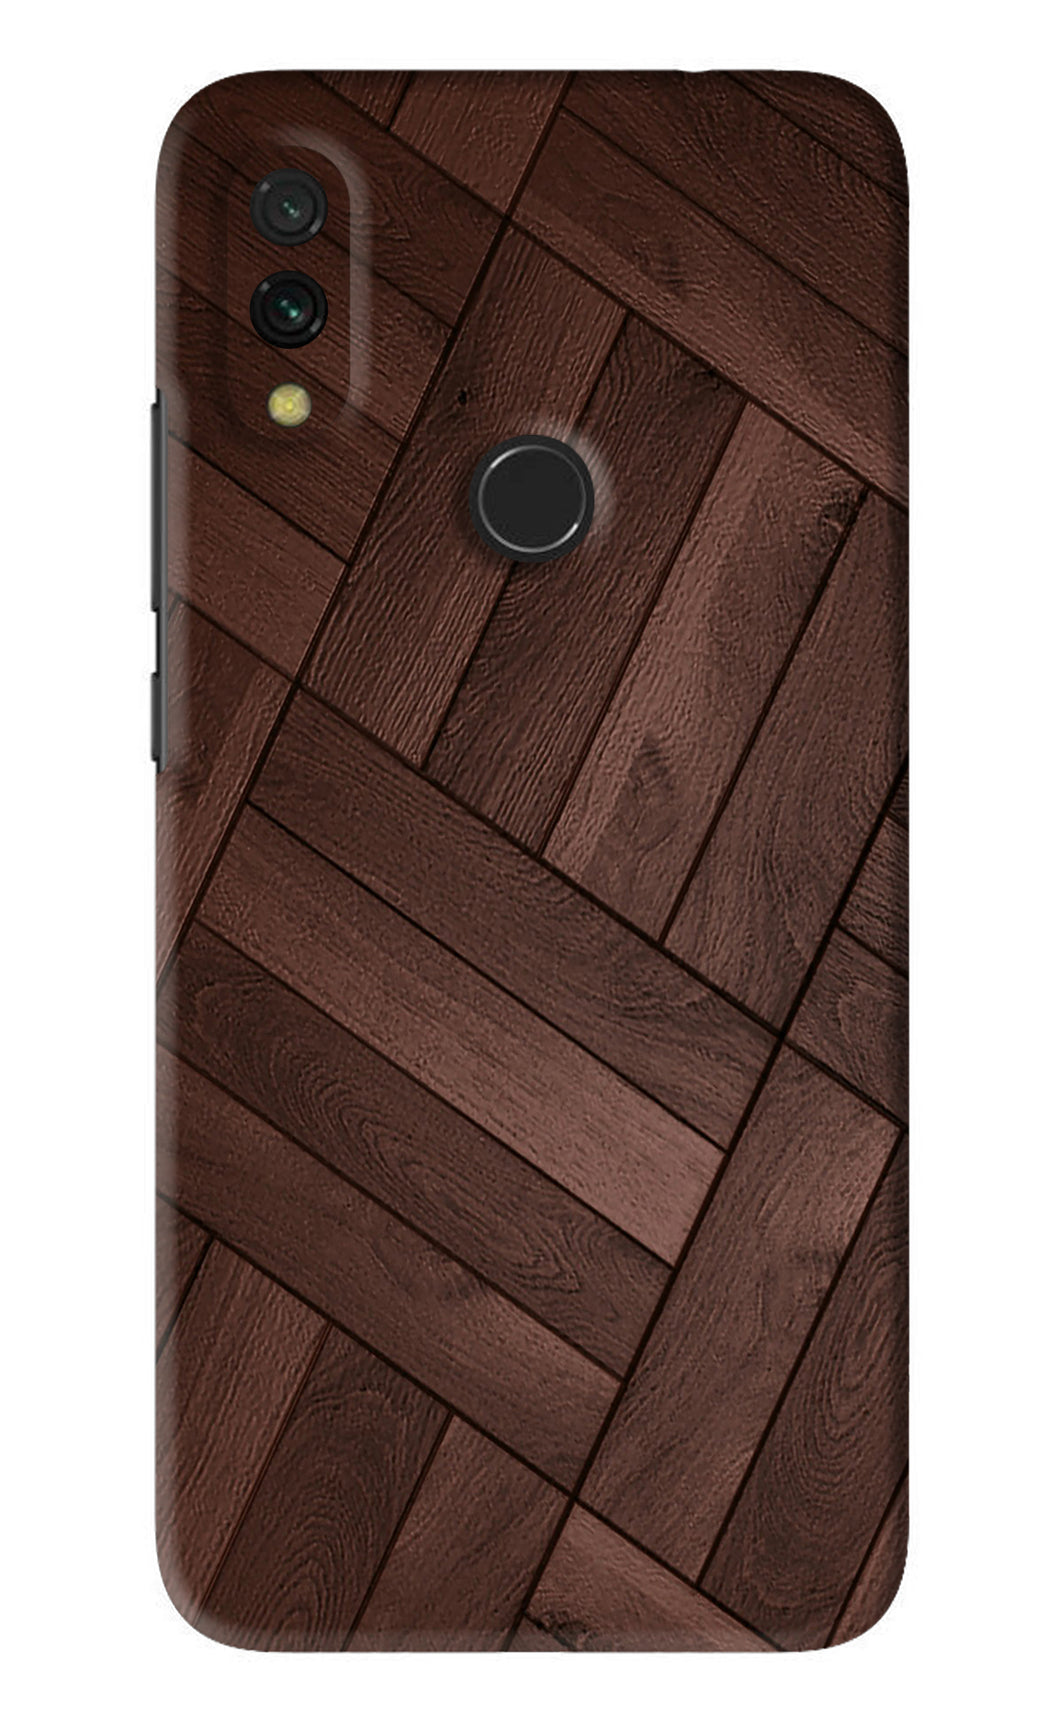 Wooden Texture Design Xiaomi Redmi 7 Back Skin Wrap